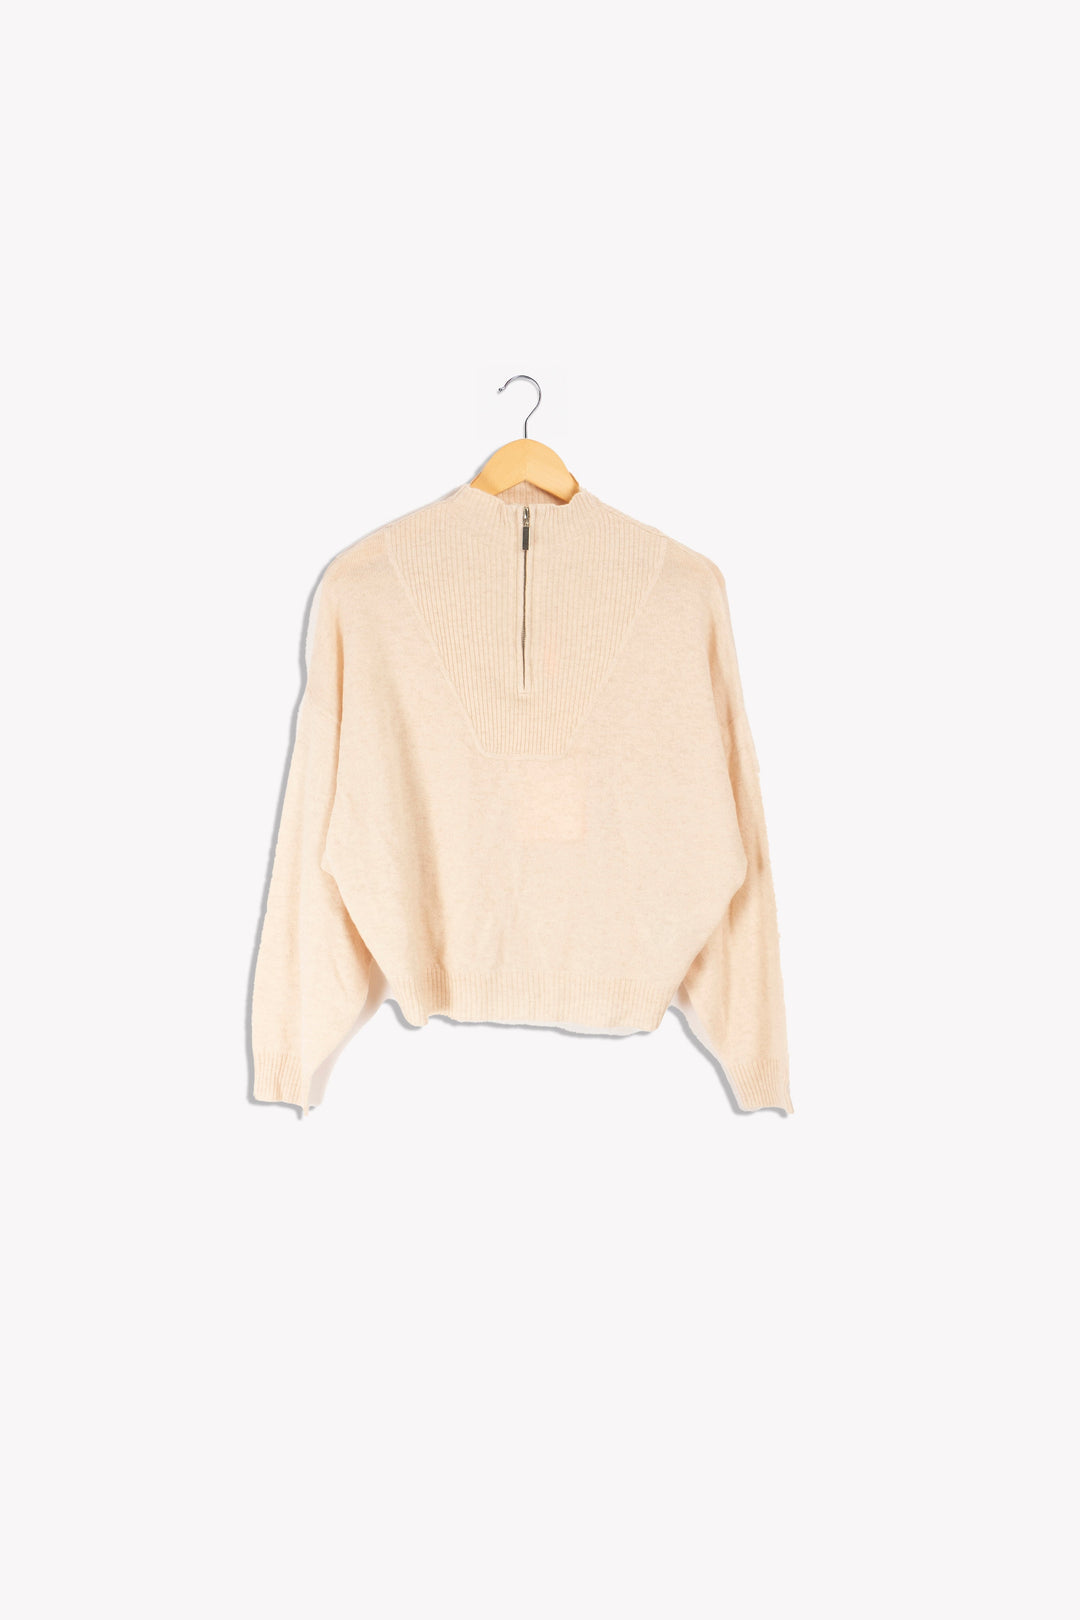 Beigefarbener Pullover mit Reißverschlusskragen – M